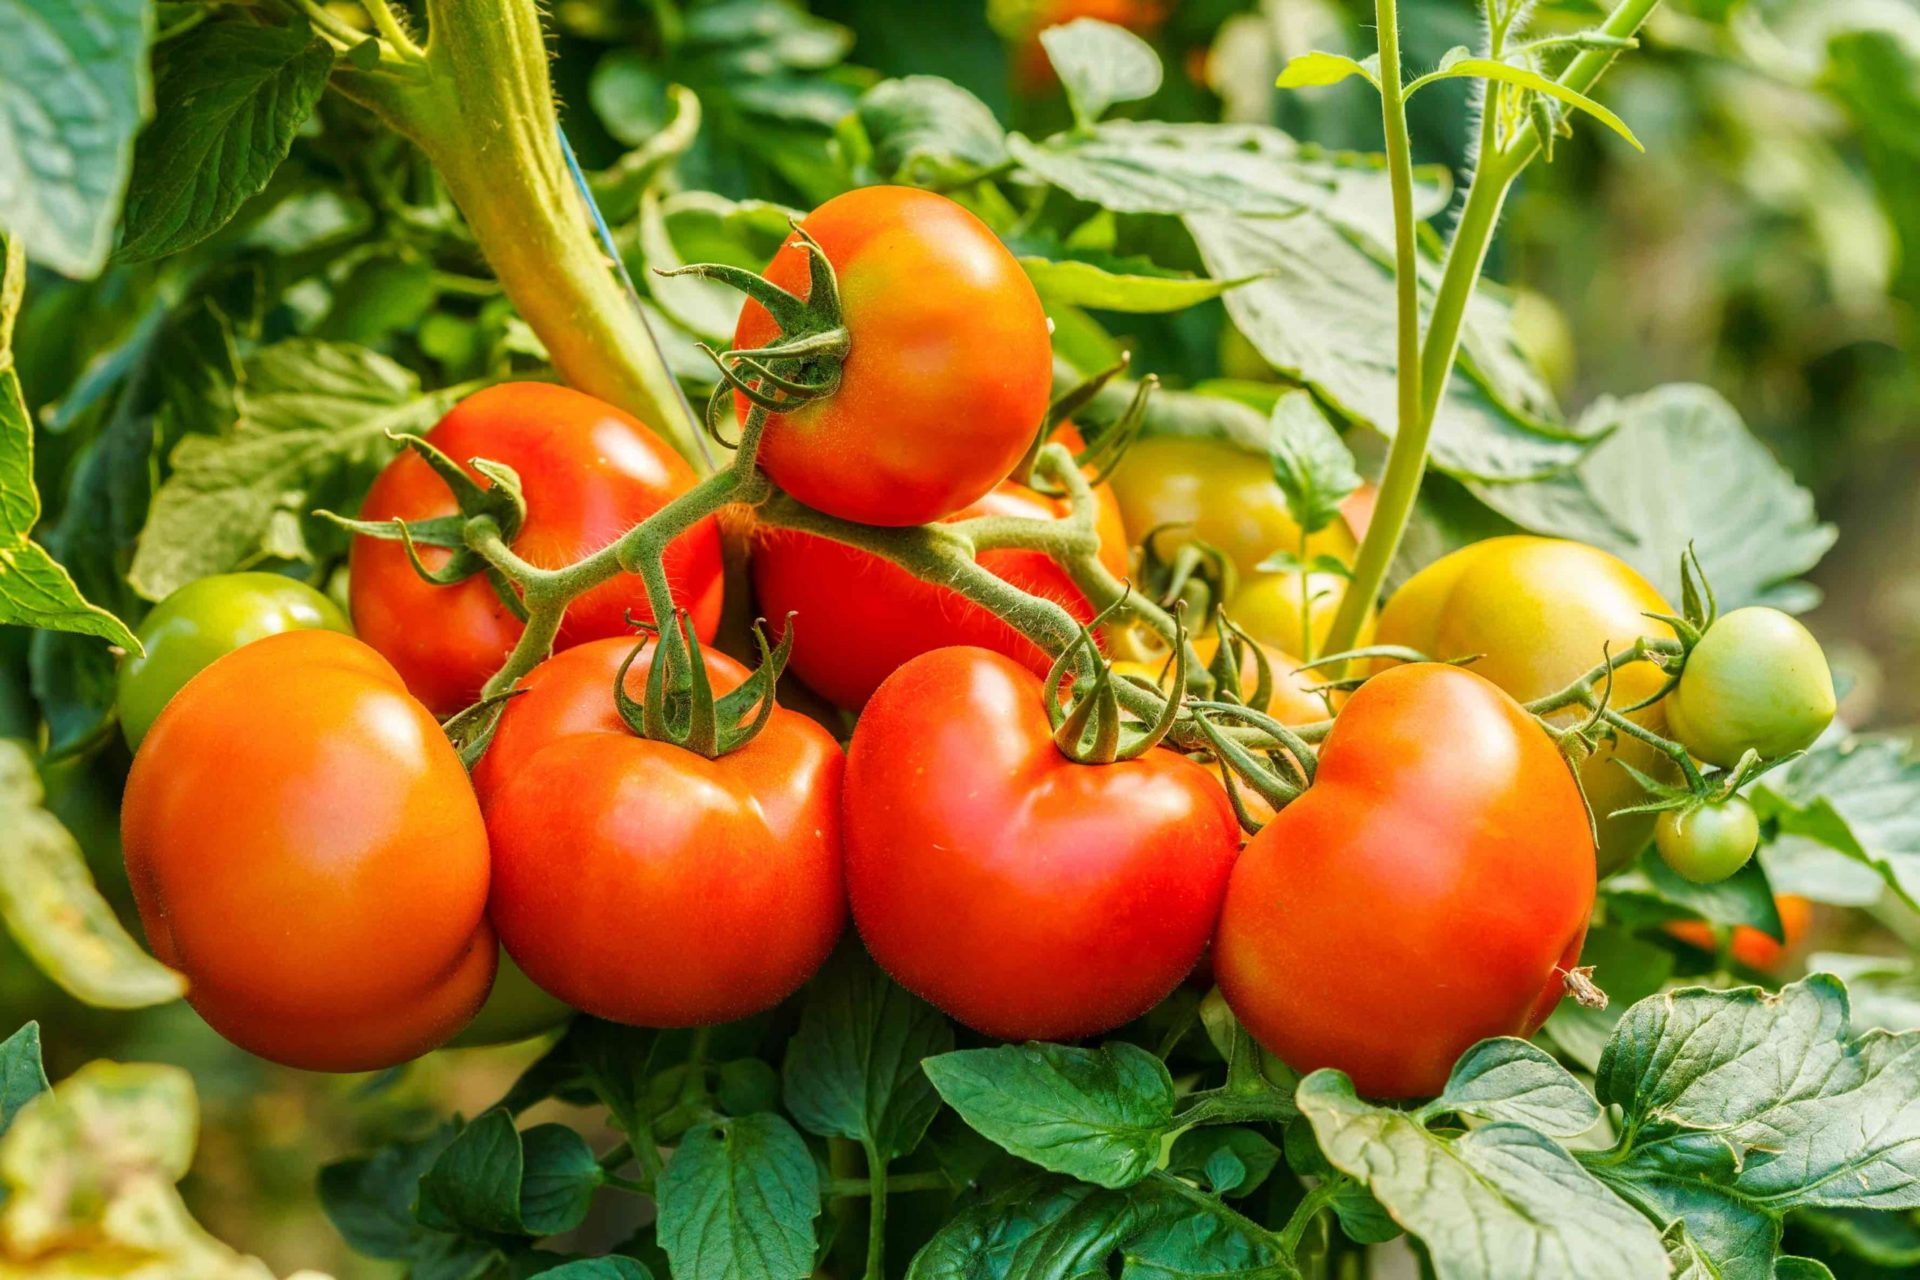 Fakta om tomater